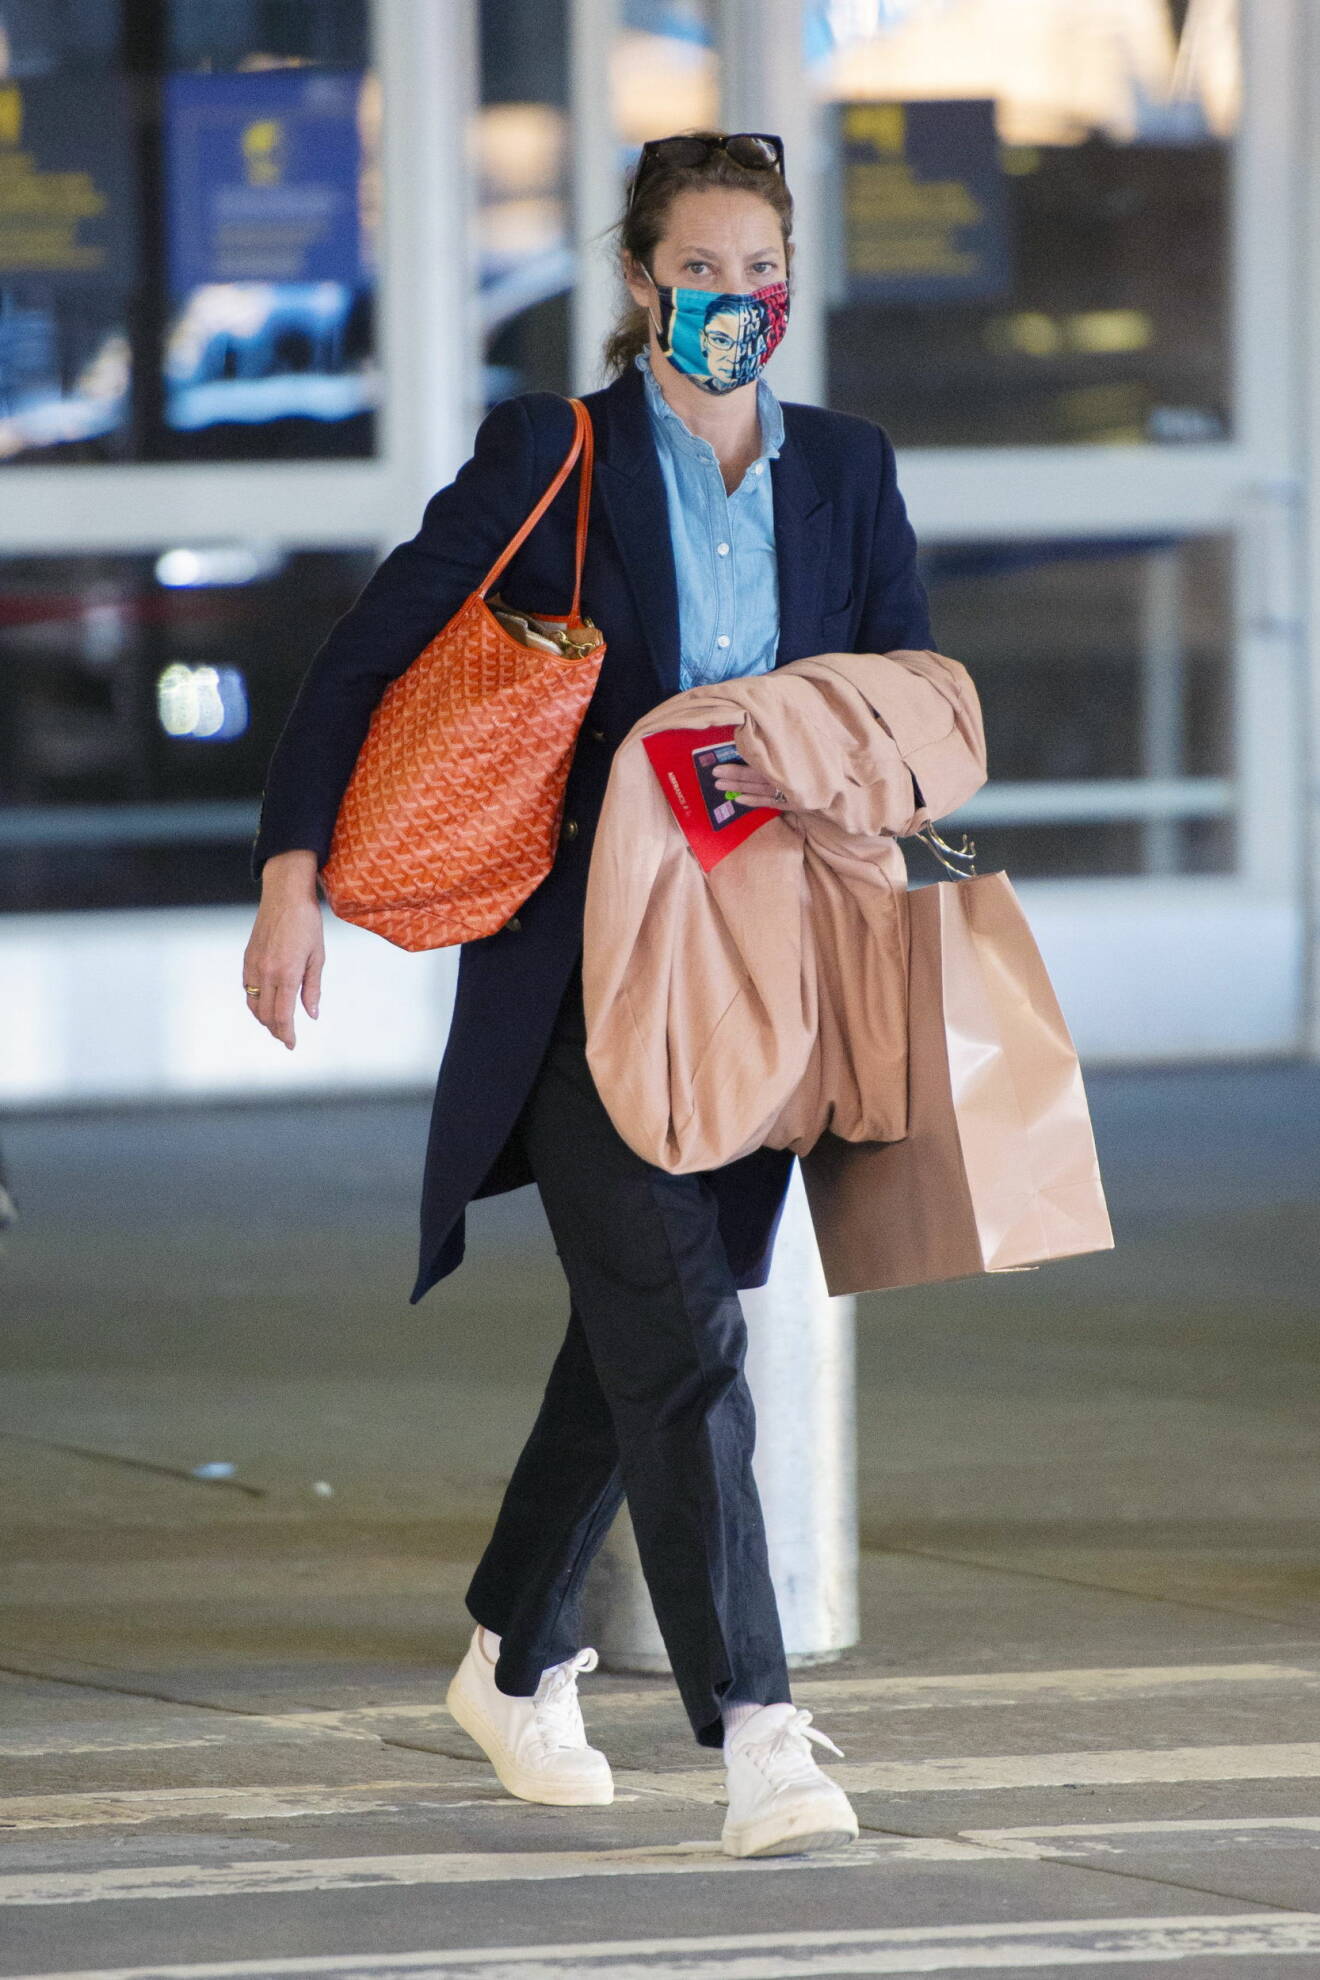 Christy Turlington i tunn rock, blå skjorta, svarta byxor och vita sneakers. På axeln har hon en orange shopper i skinn och åå armen bär hon en beige rock. Hon har även ett mönstrat munskydd.